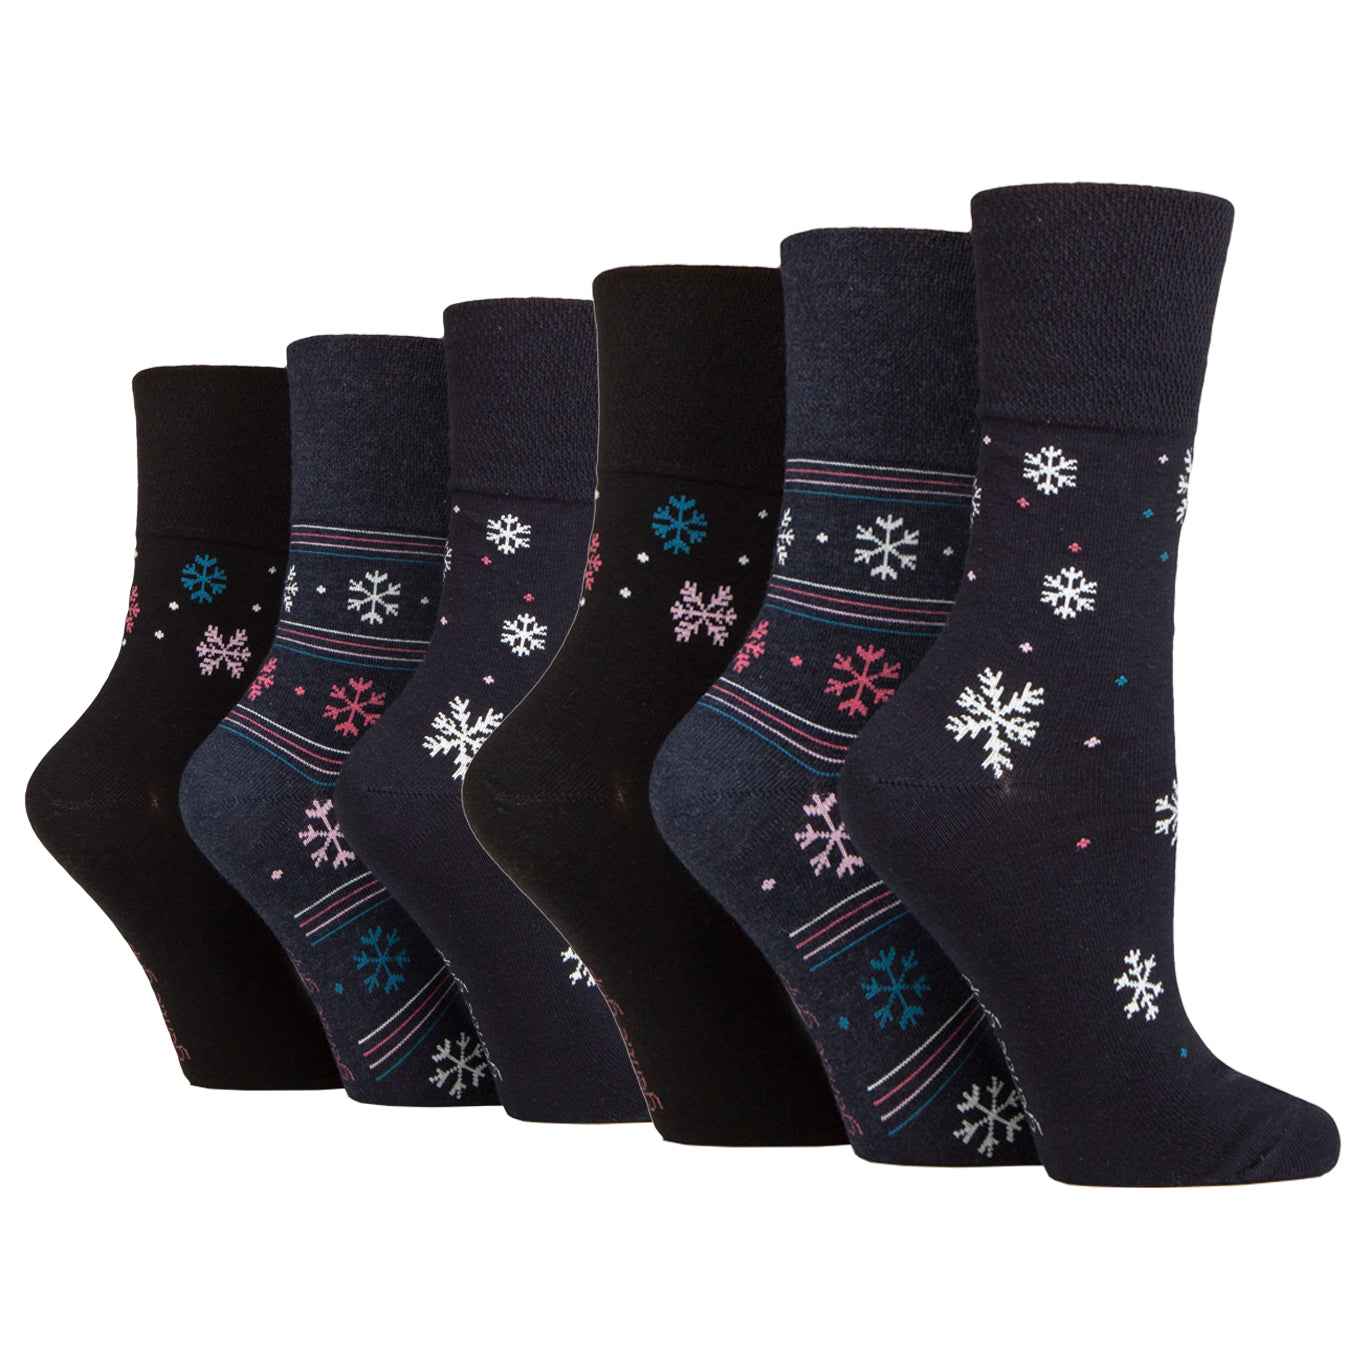 6 Pairs Ladies Gentle Grip Cotton Socks - Snowflake